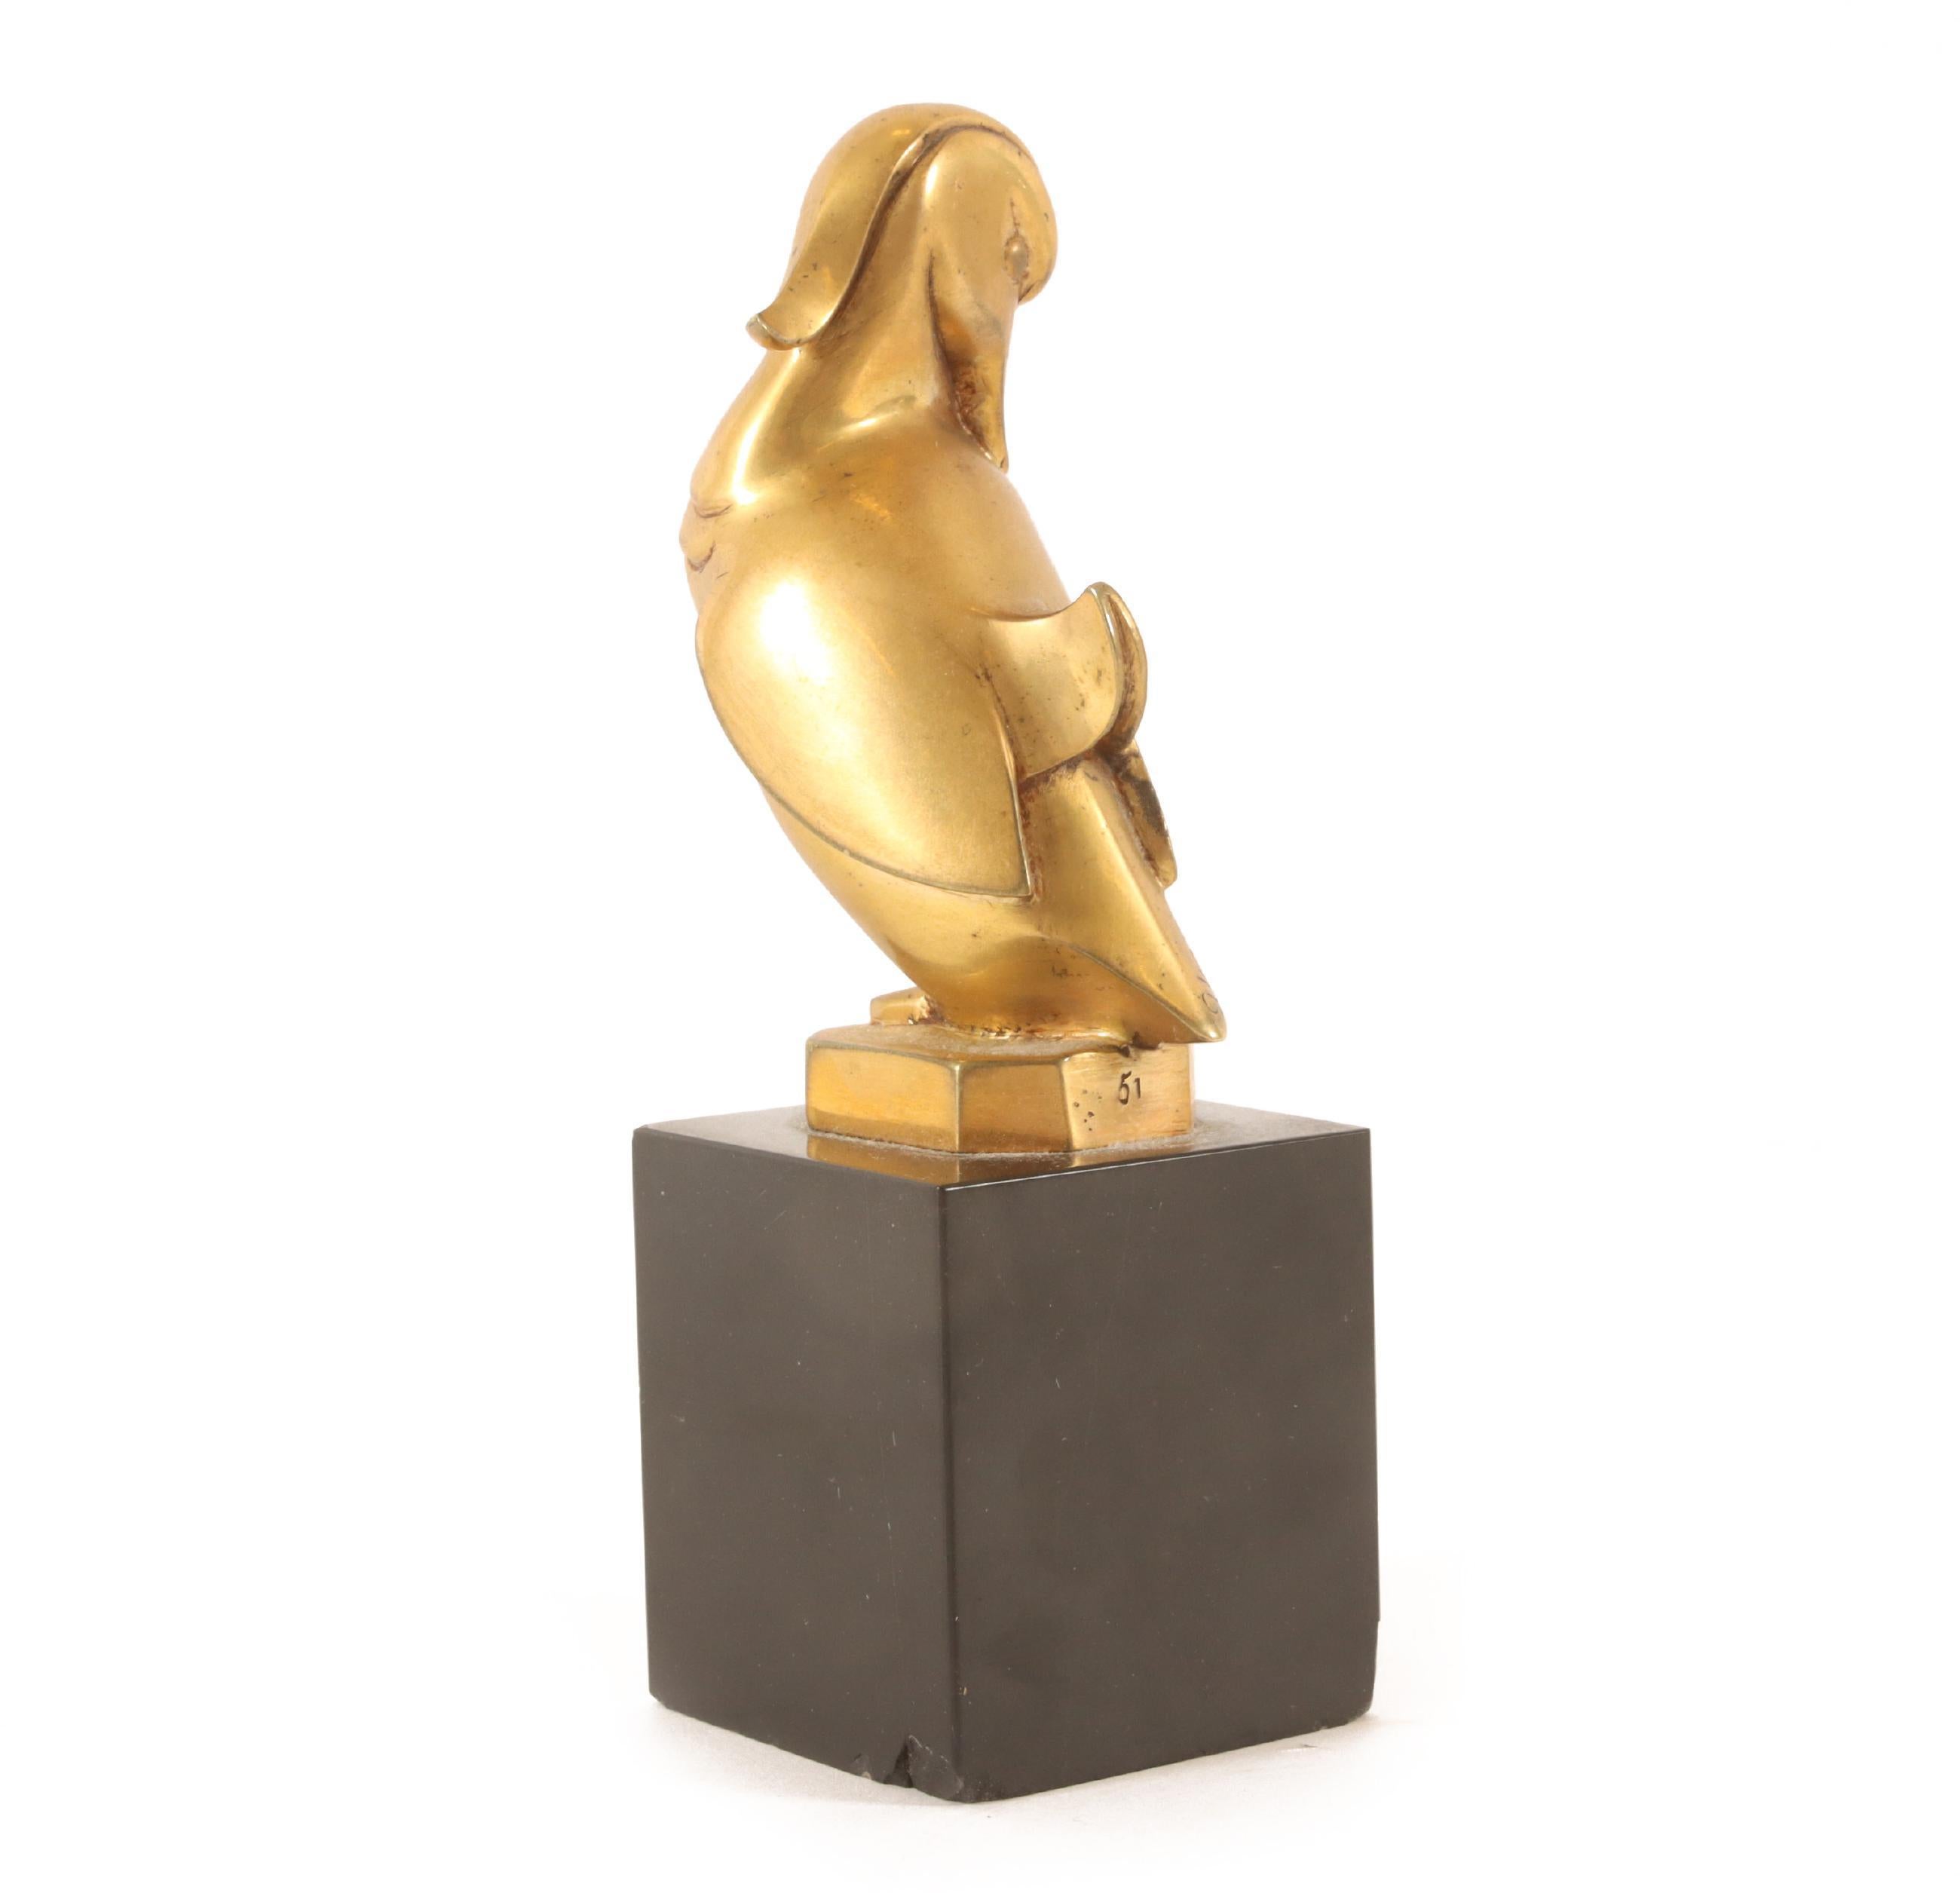 Art Deco Mandarin Ente Skulptur aus Messing von Georges H. Laurent. Die Skulptur ist mit G.H:laurent, Nummer 51, signiert. Der Vogel ist auf einem schwarzbraunen Portoromarmorsockel montiert (mit einer kleinen Beschädigung an den Sockelecken). Ein